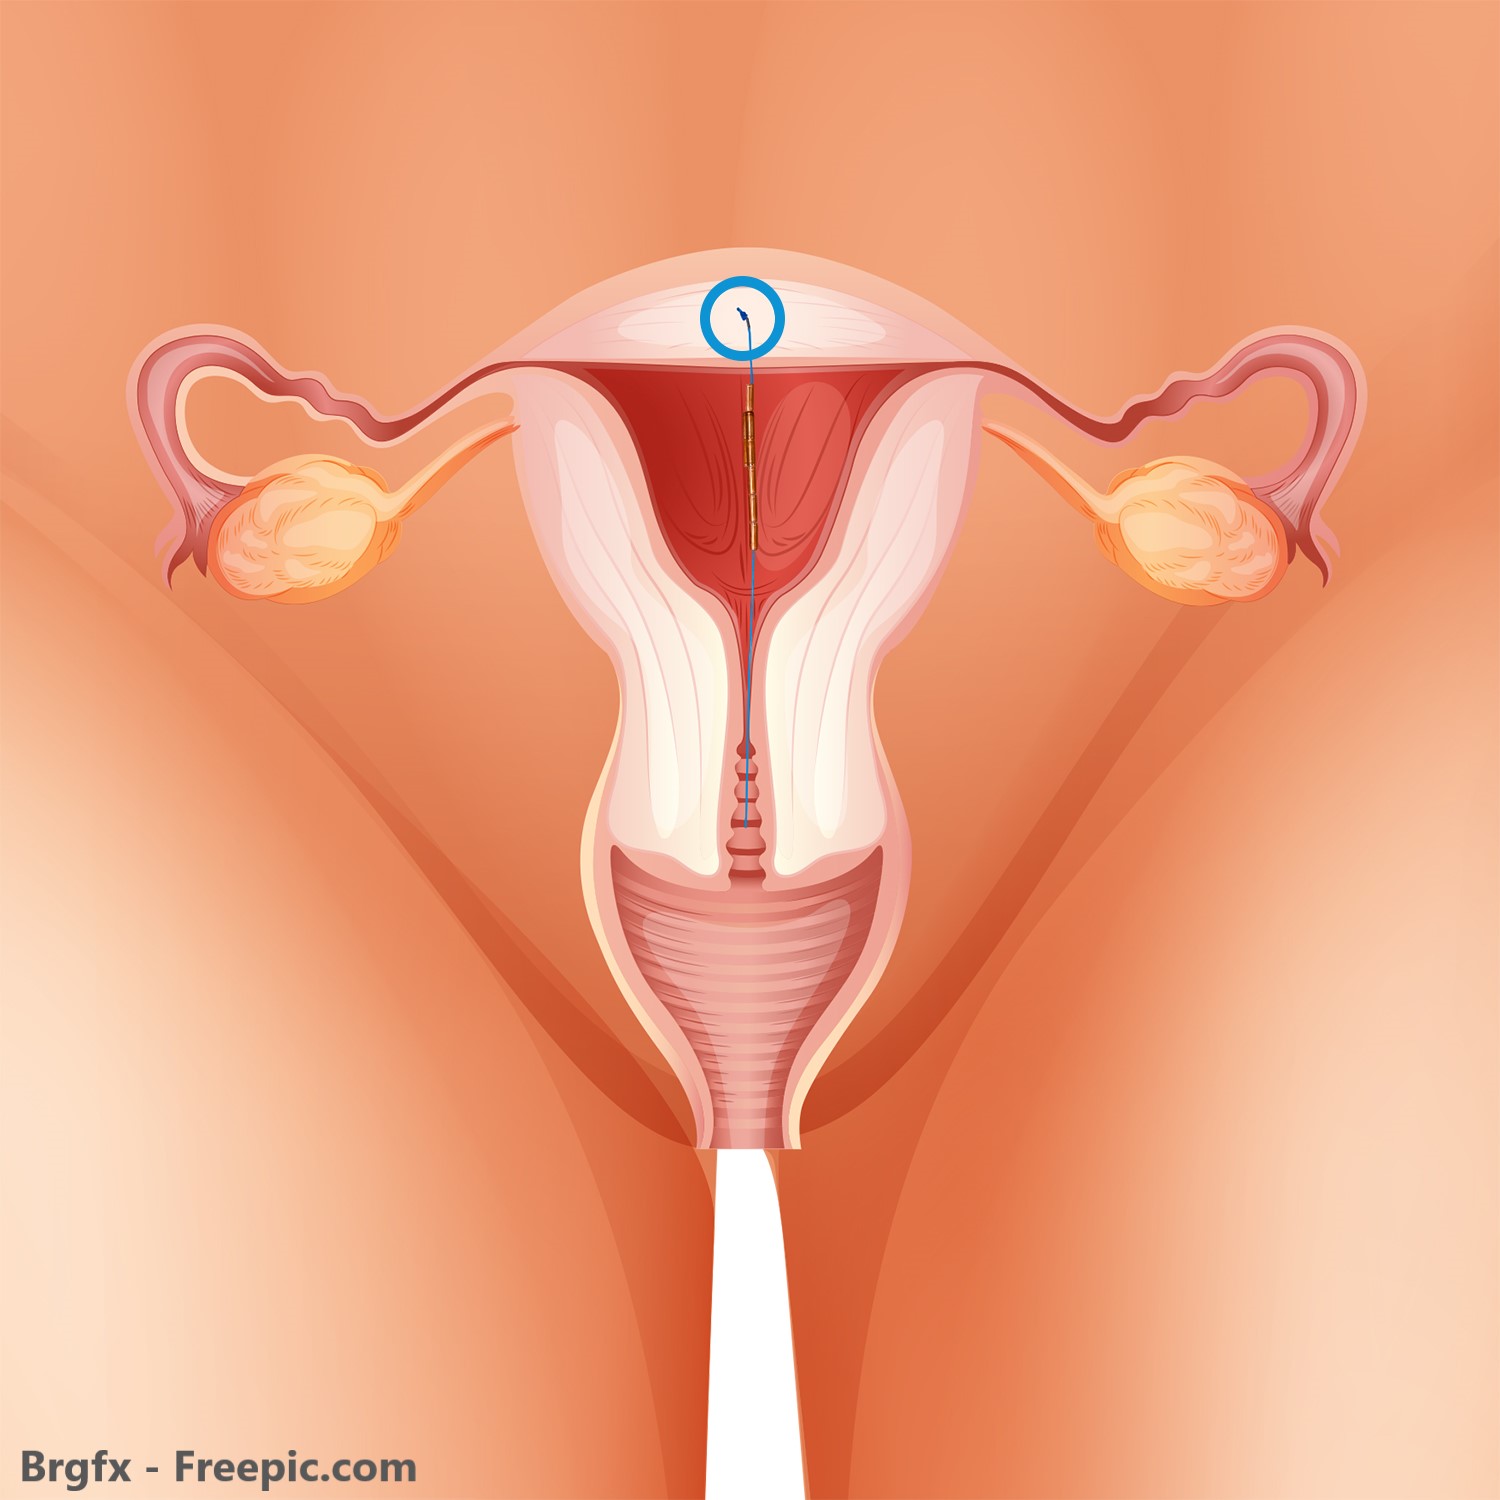 GYN CS Kupfer Spirale in einer Gebärmutter